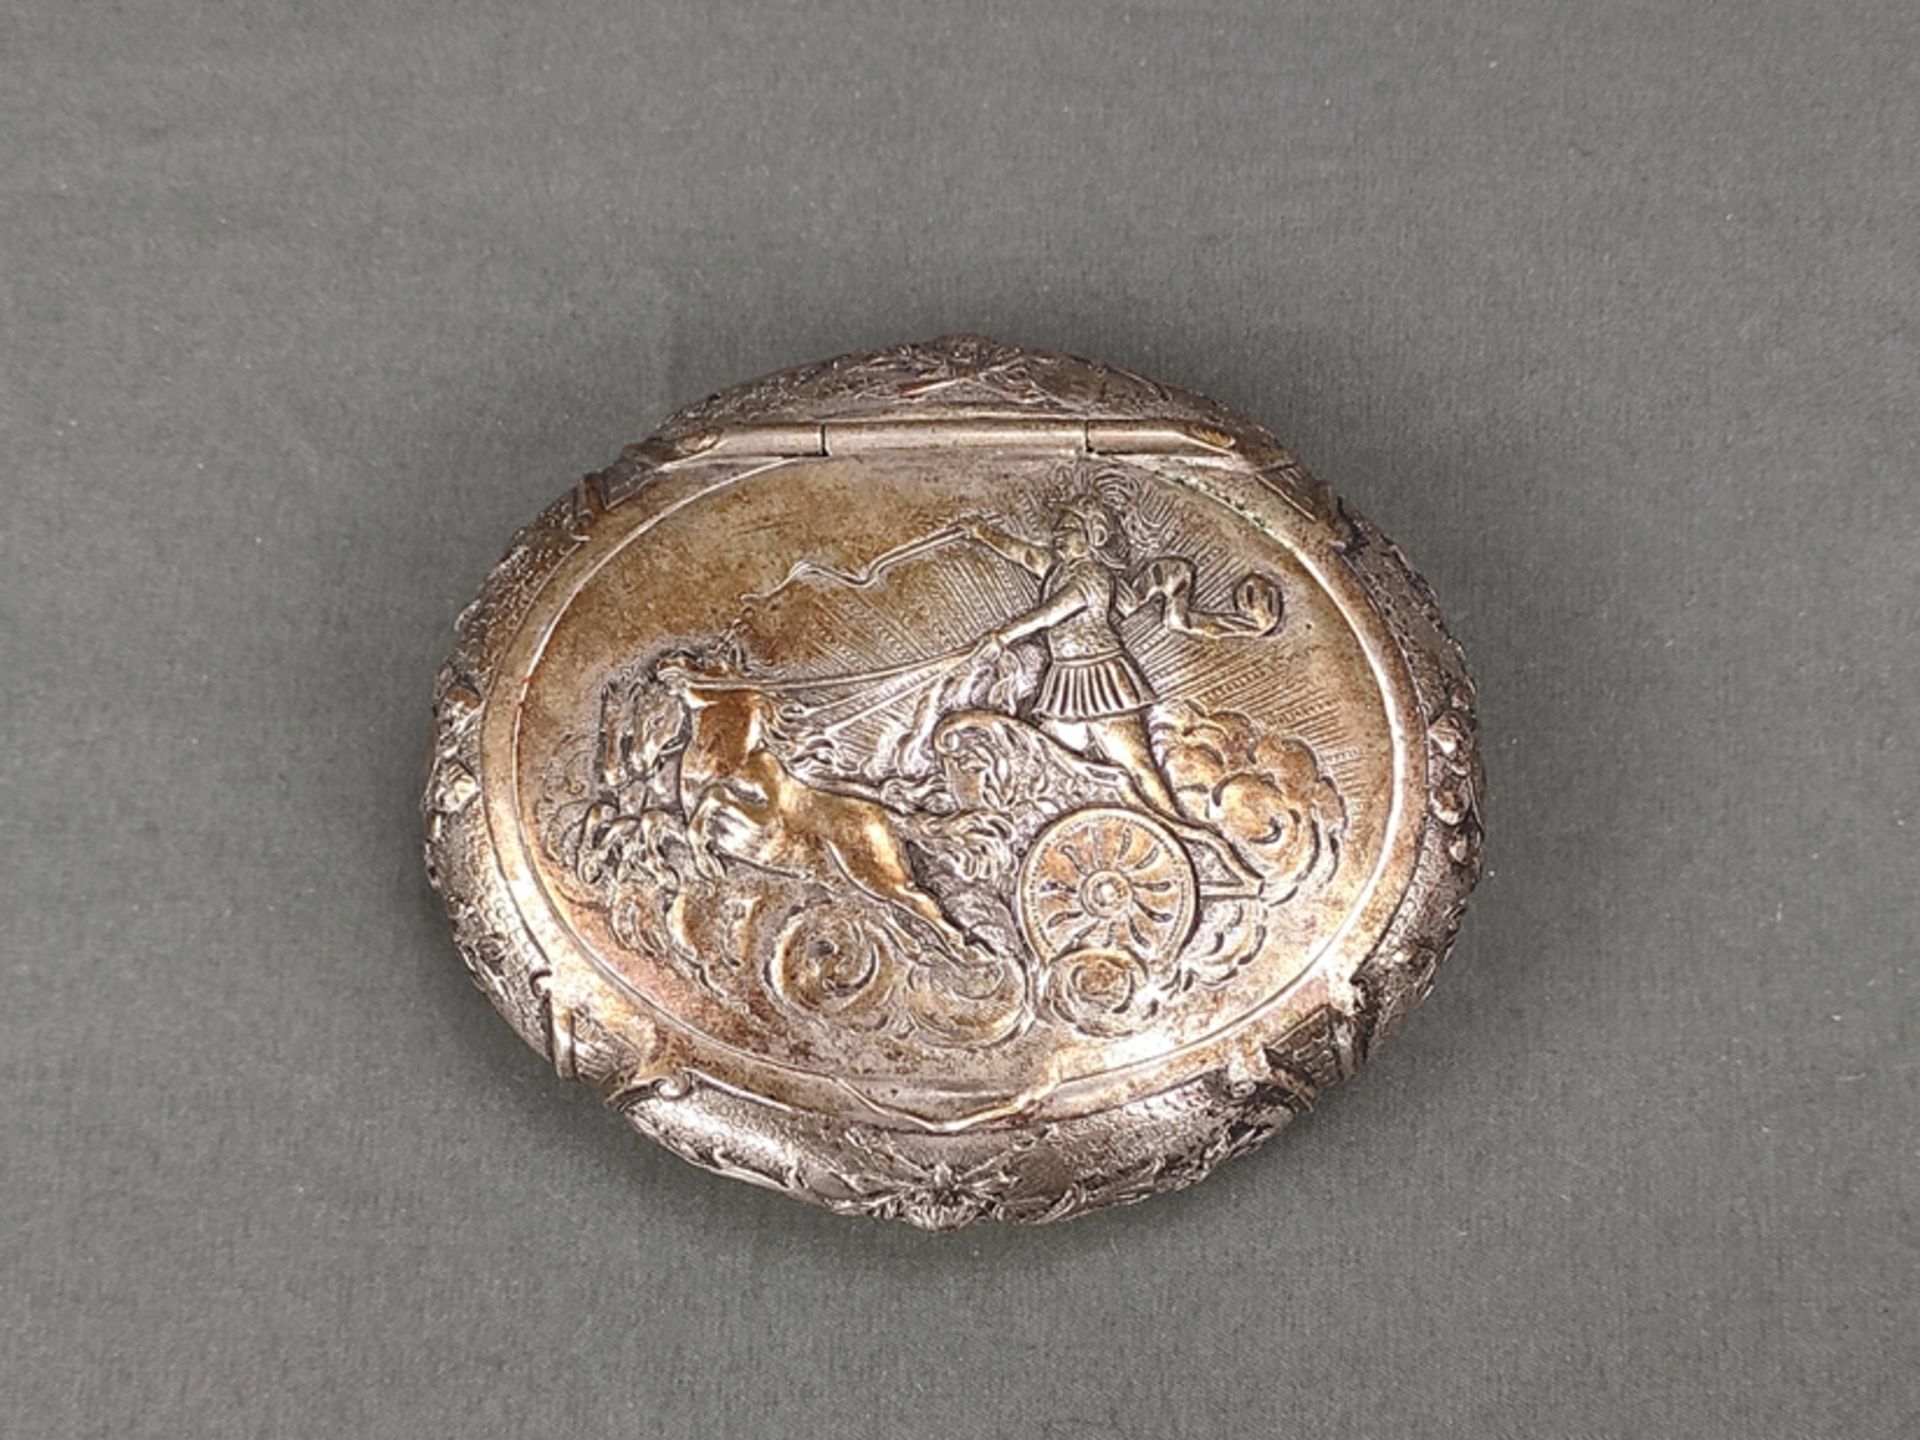 Deckeldose, Silber 800, Deutschland, 104g, ovale Form, Deckel verziert mit römischem Streitwagen, M